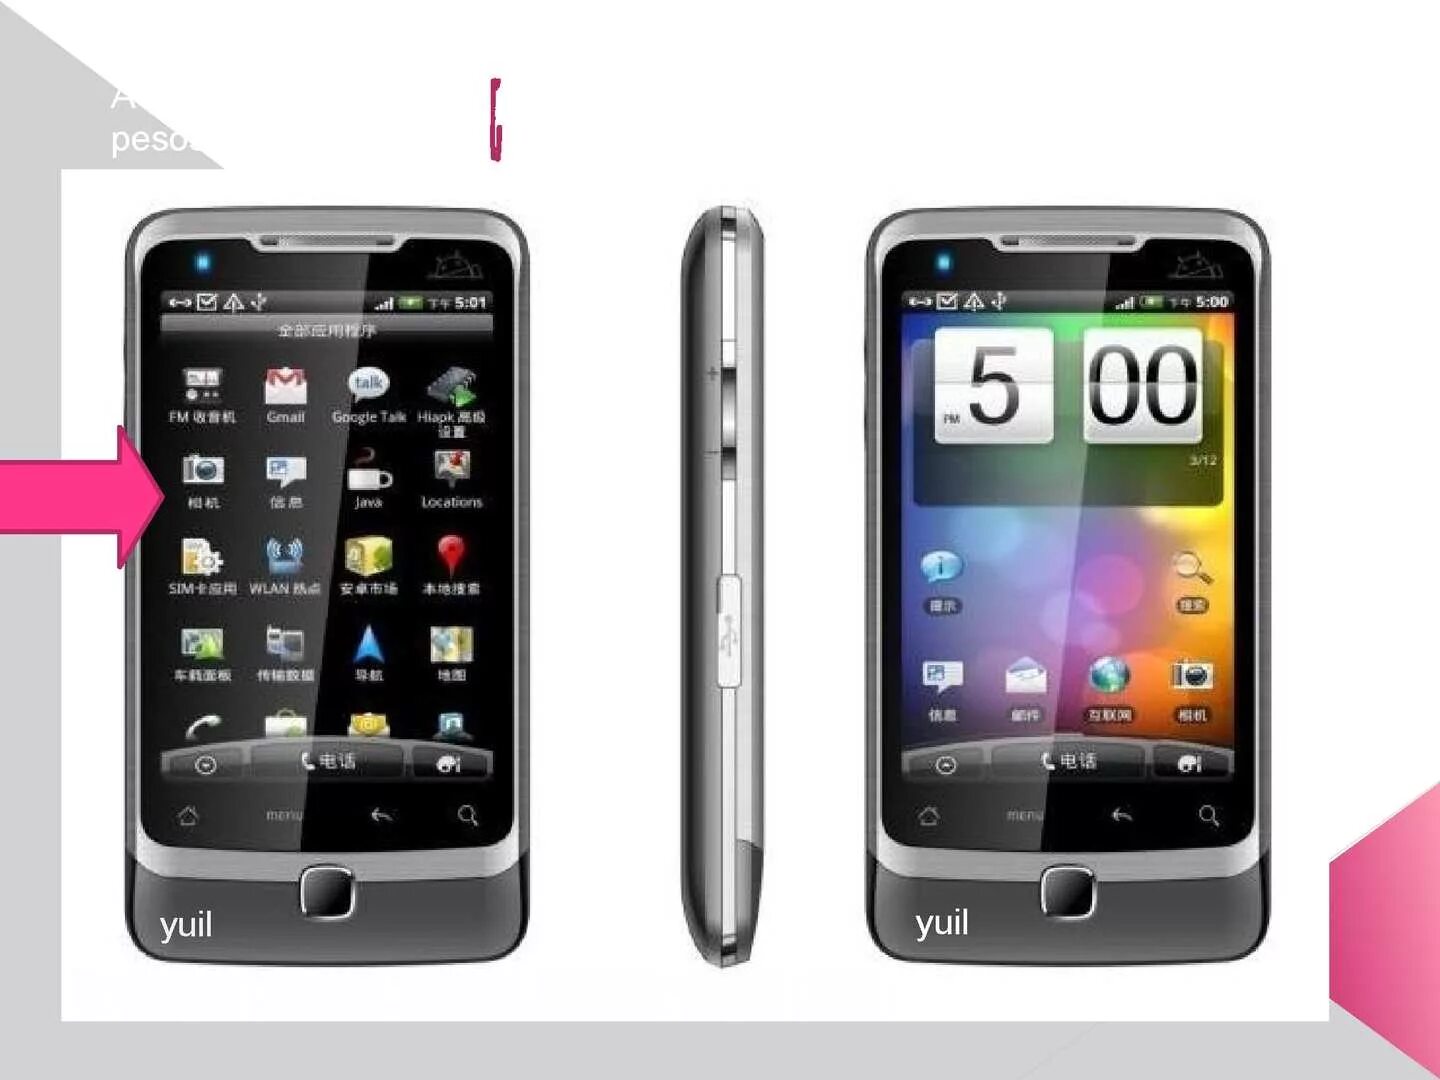 Телефон андроид на две сим. HTC 5000. Телефон на базе андроид. Сенсорный телефон с 2 симками. Смартфоны андроид до 5000.